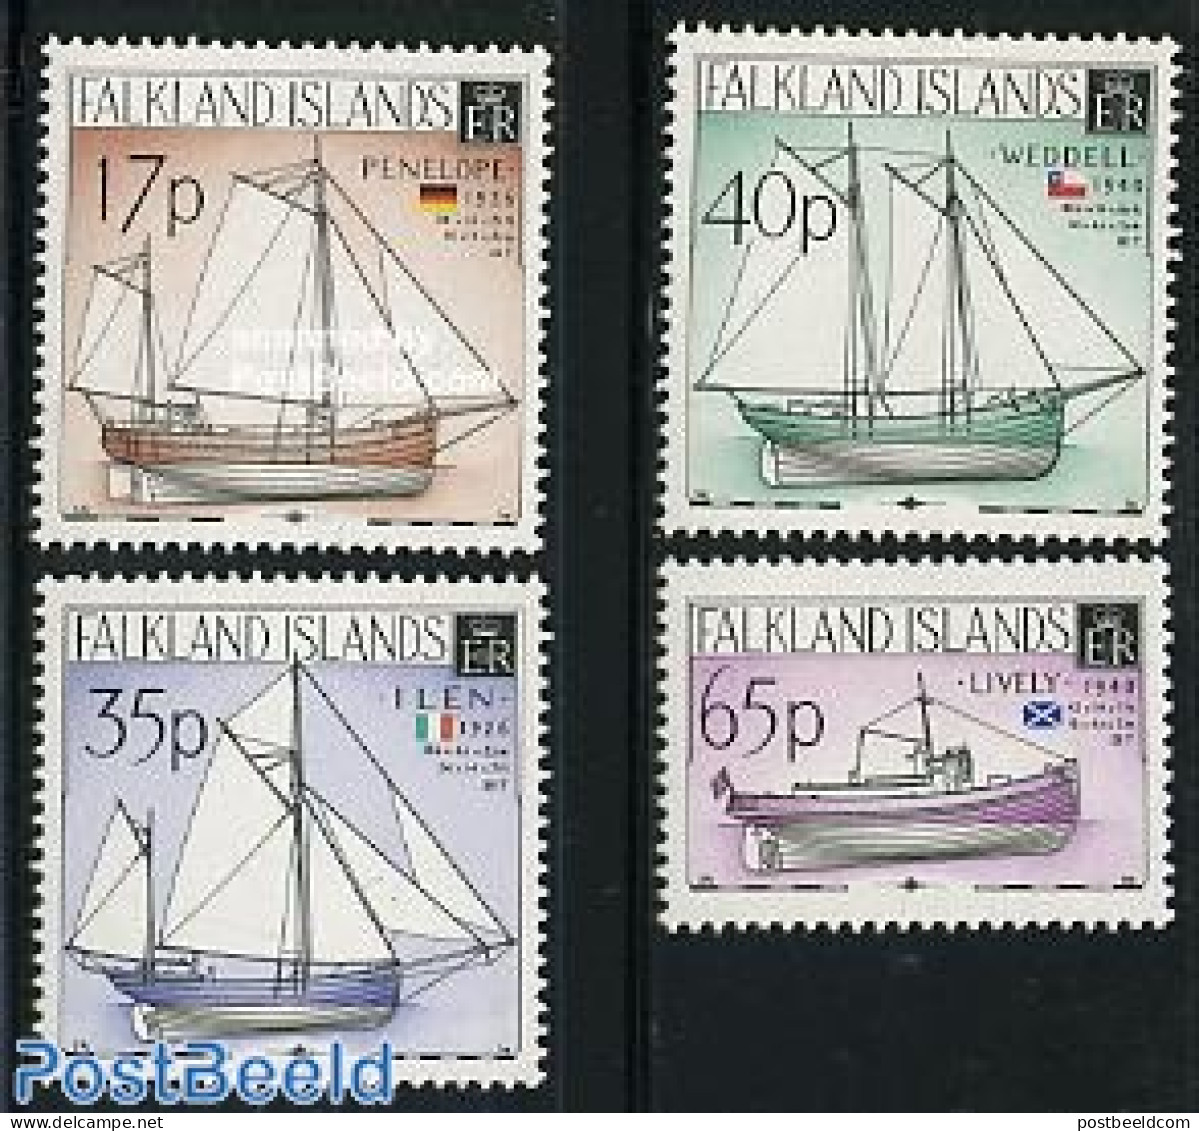 Falkland Islands 1998 Sailing Ships 4v, Mint NH, Transport - Ships And Boats - Ships